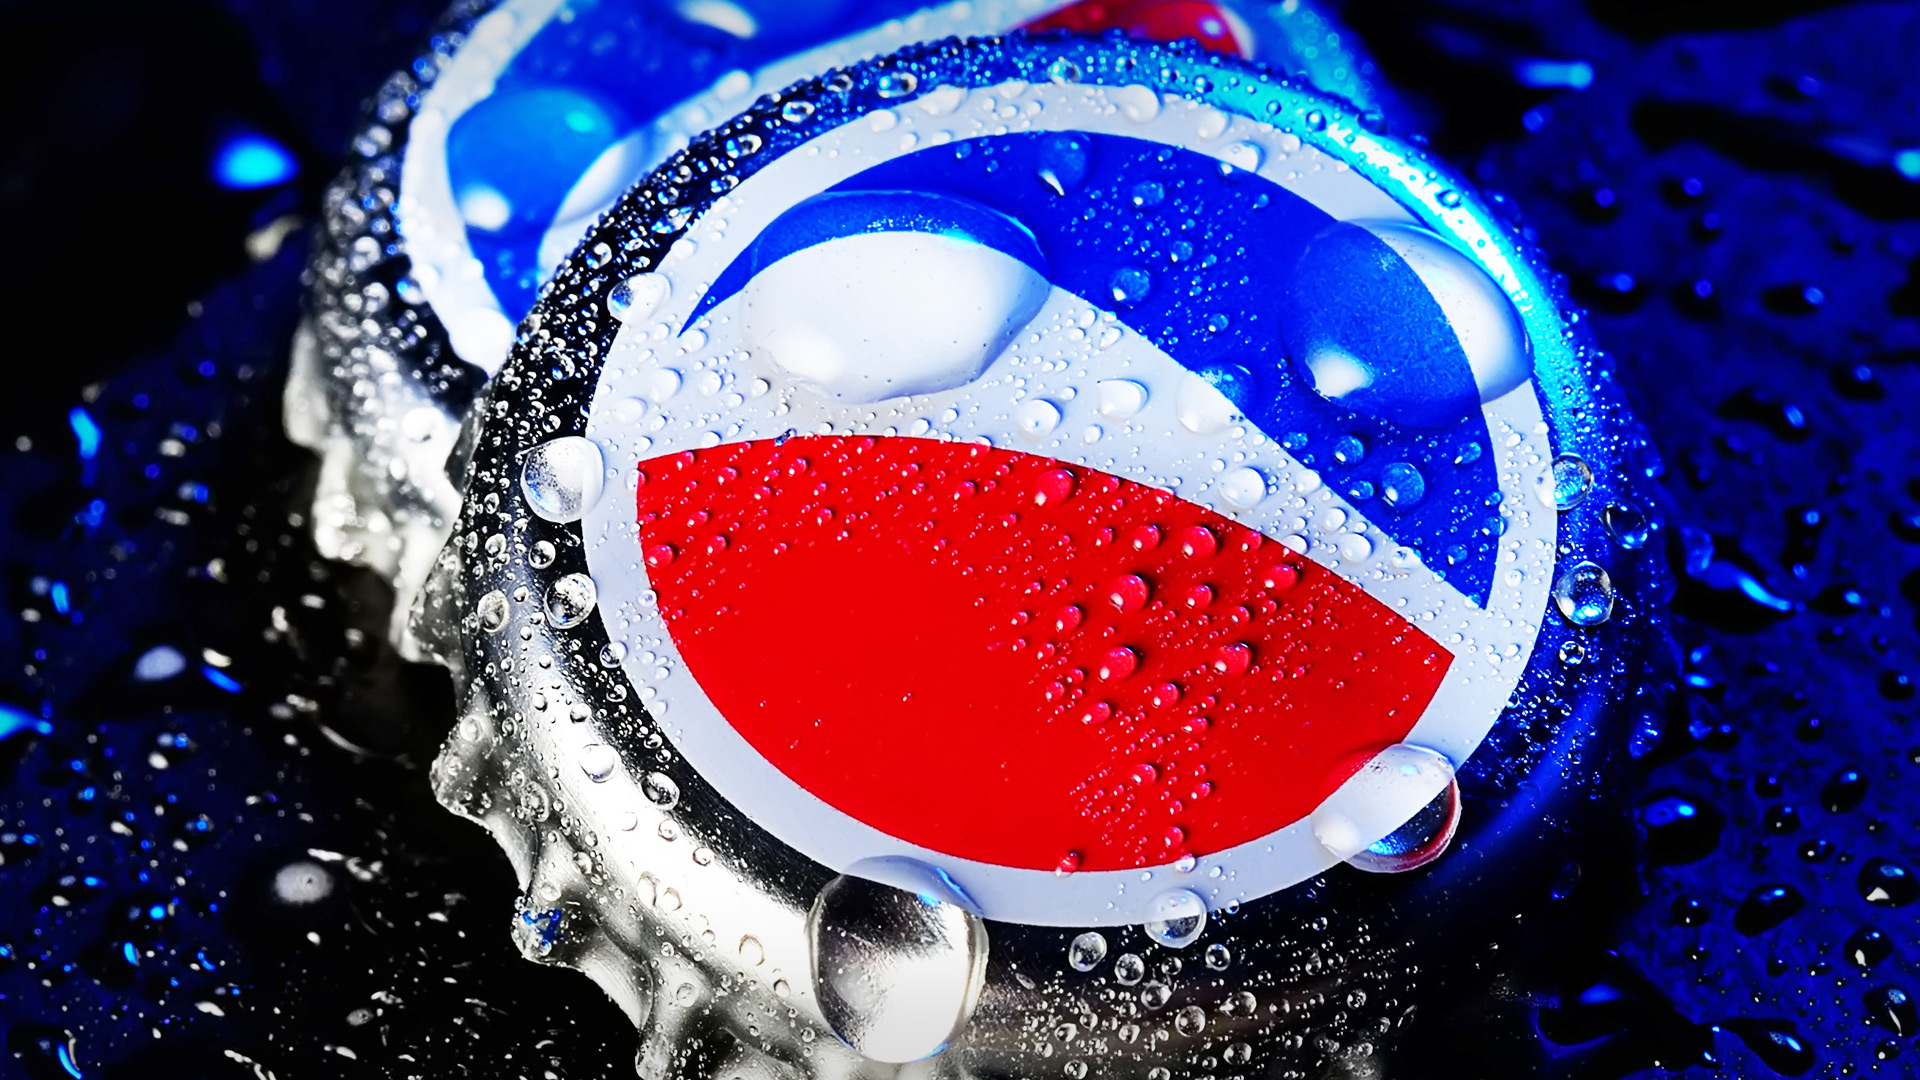 Pepsico Beverages